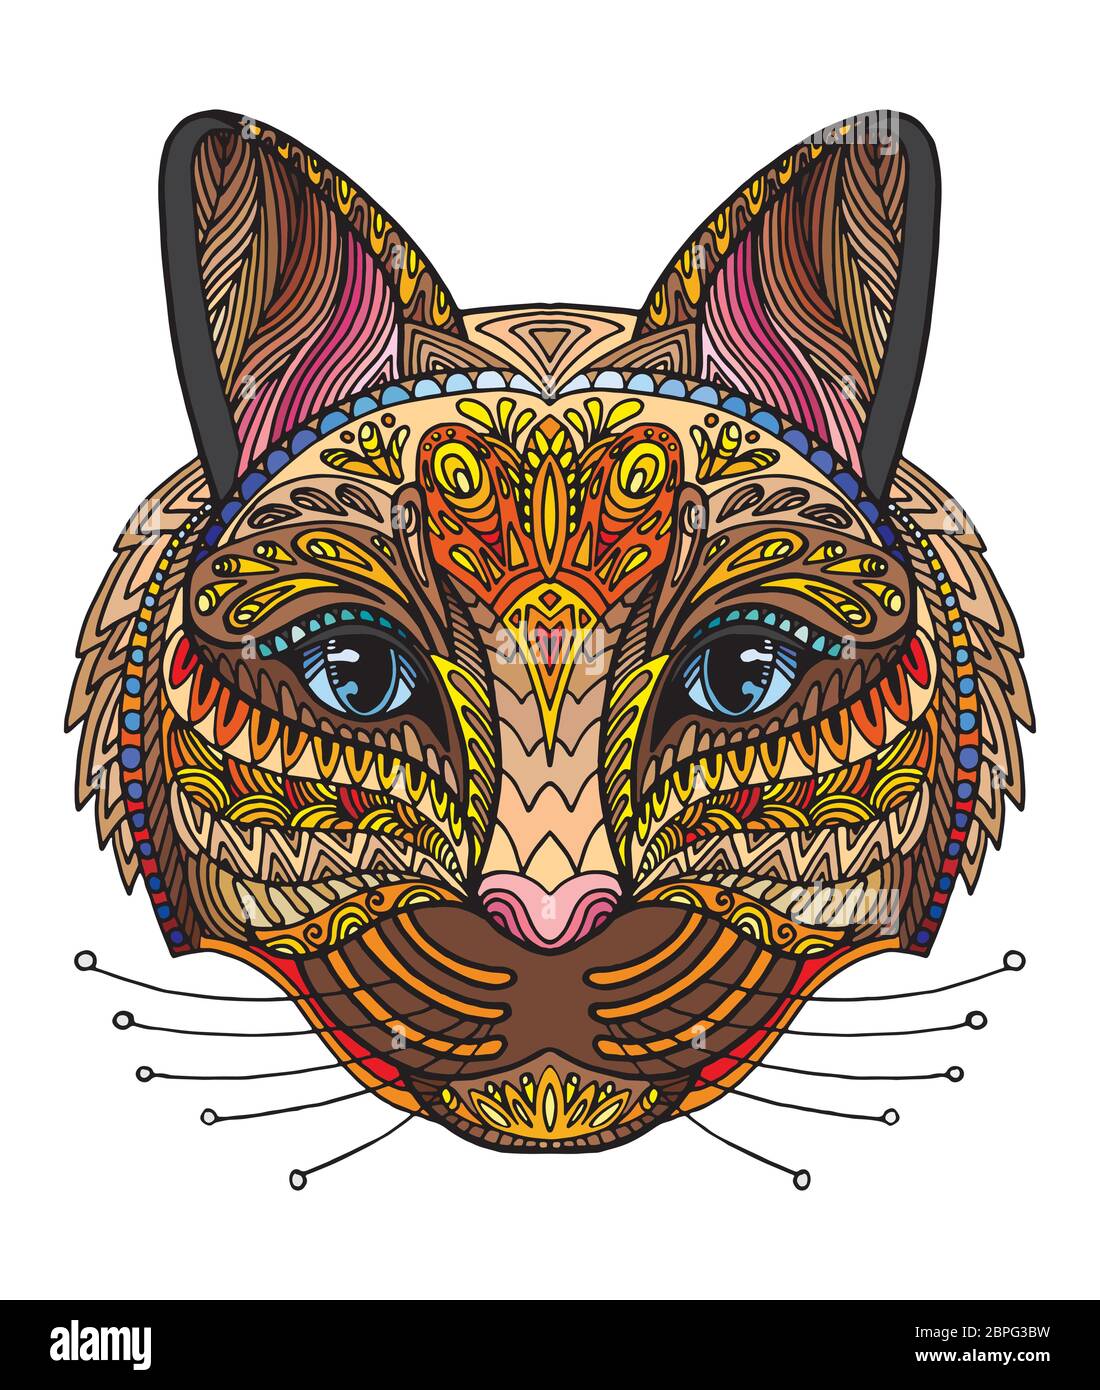 Vettore decorativo doodle testa ornamentale del gatto. Vettore astratto colorato illustrazione della testa di gatto isolato su sfondo bianco. Illustrazione del magazzino per Illustrazione Vettoriale